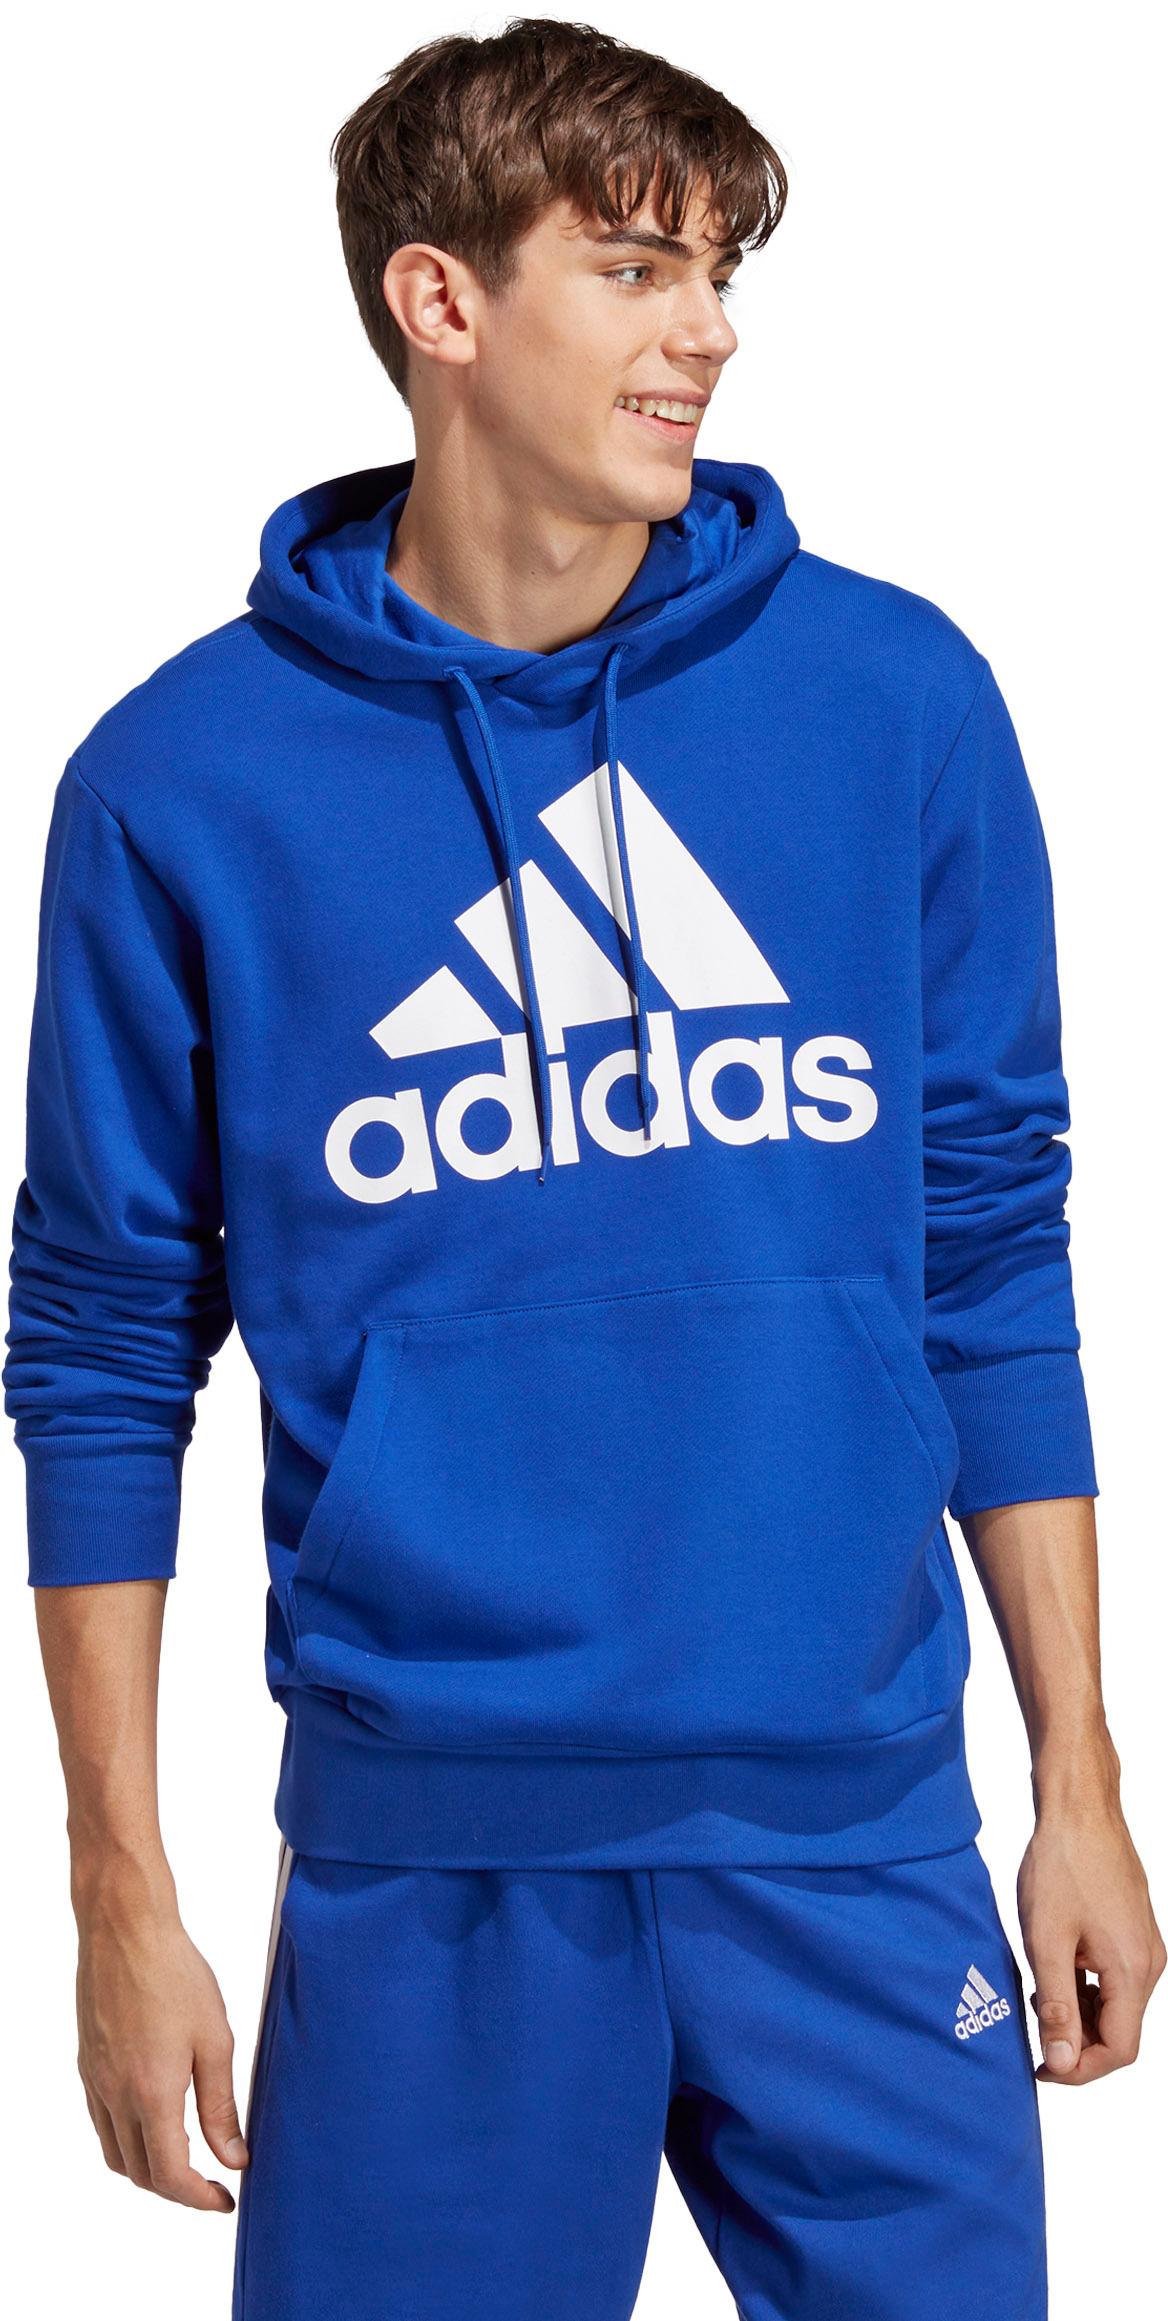 Adidas Hoodie Herren semi lucid blue im Online Shop von SportScheck kaufen